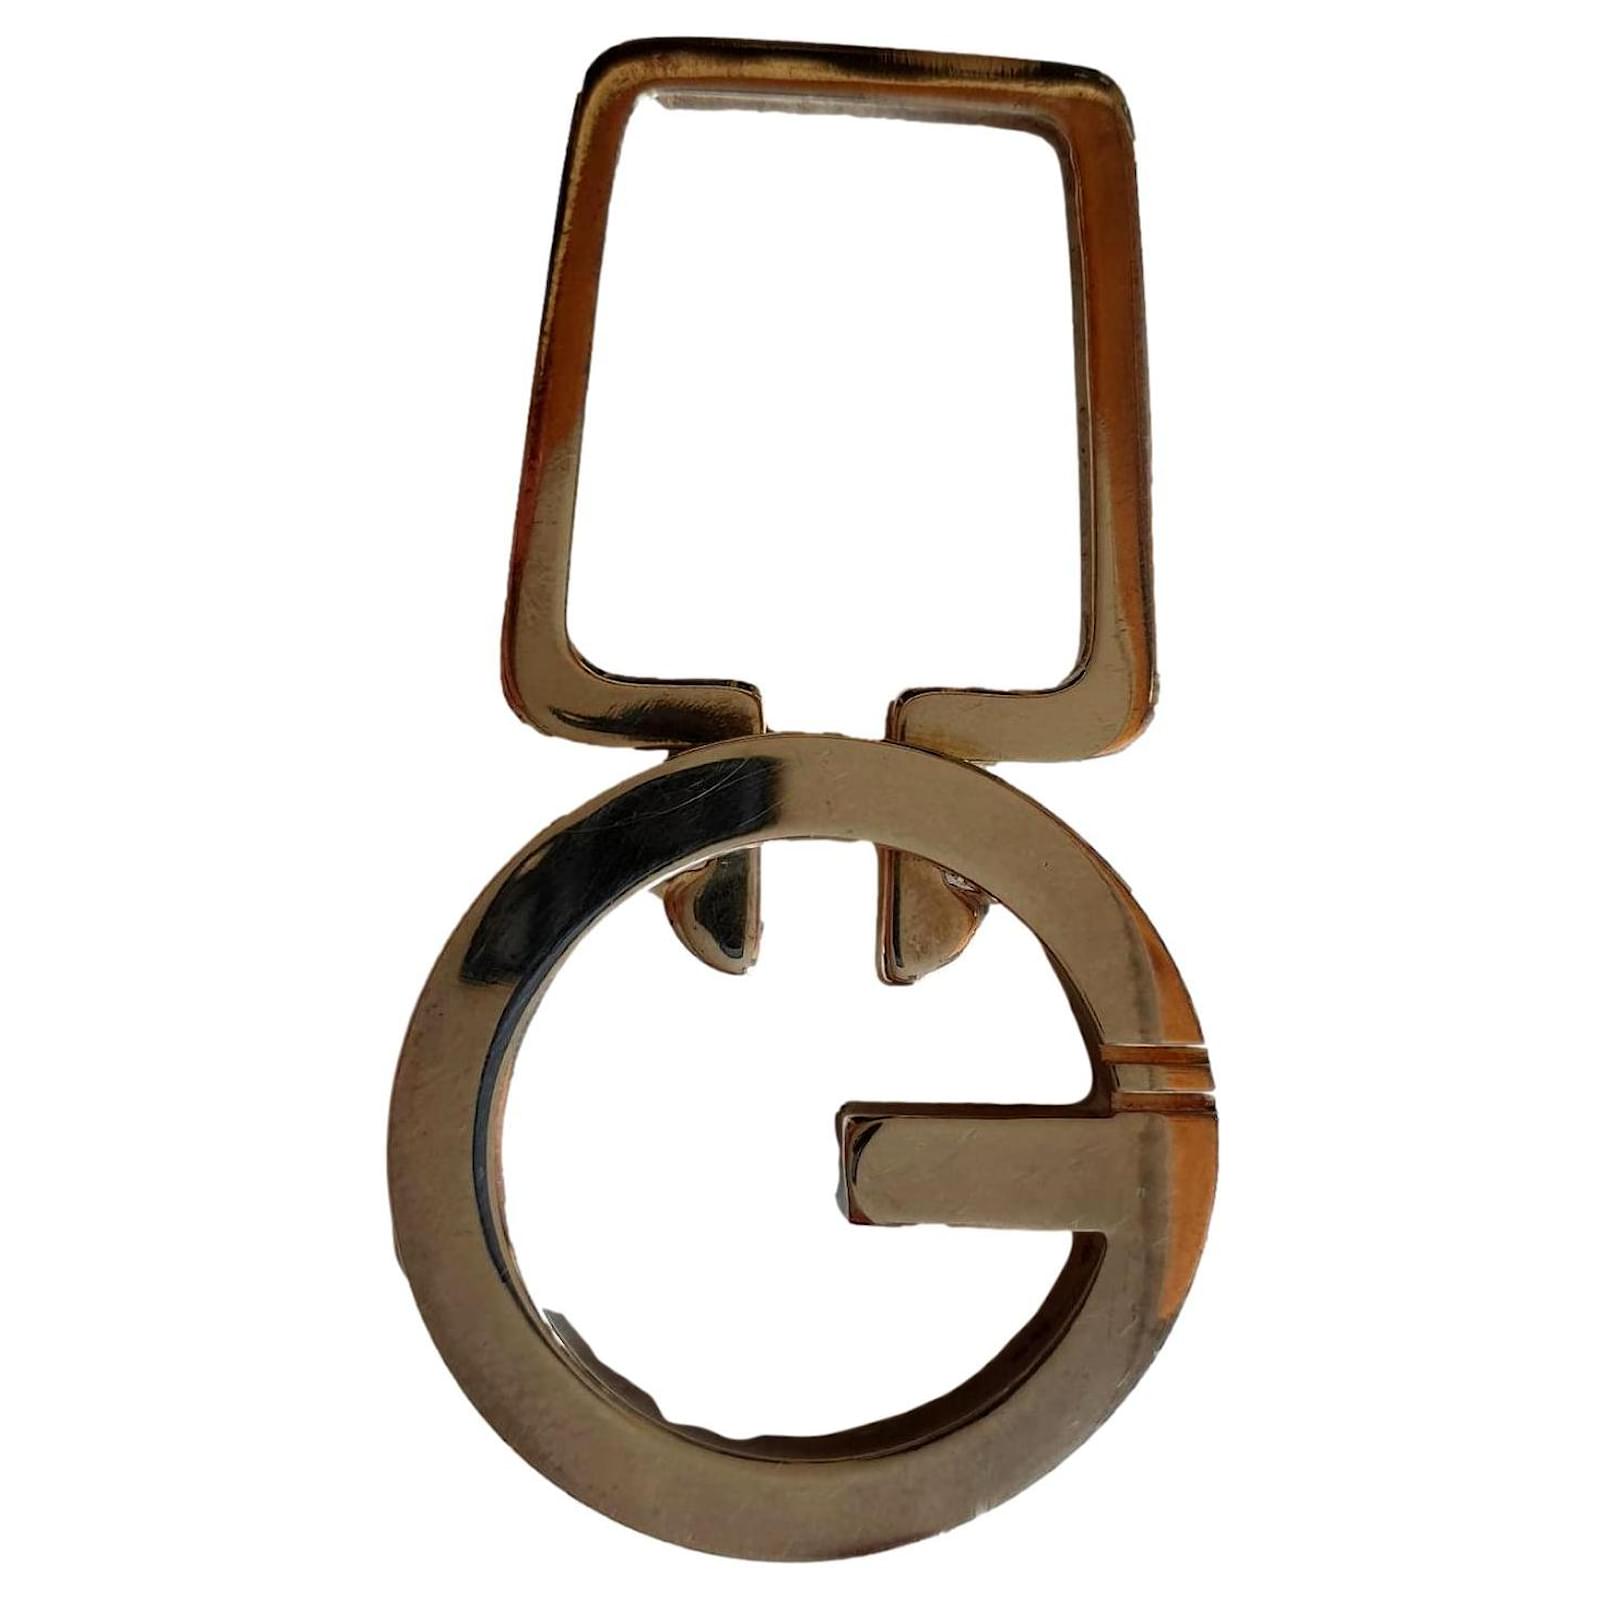 gucci key holder vintage